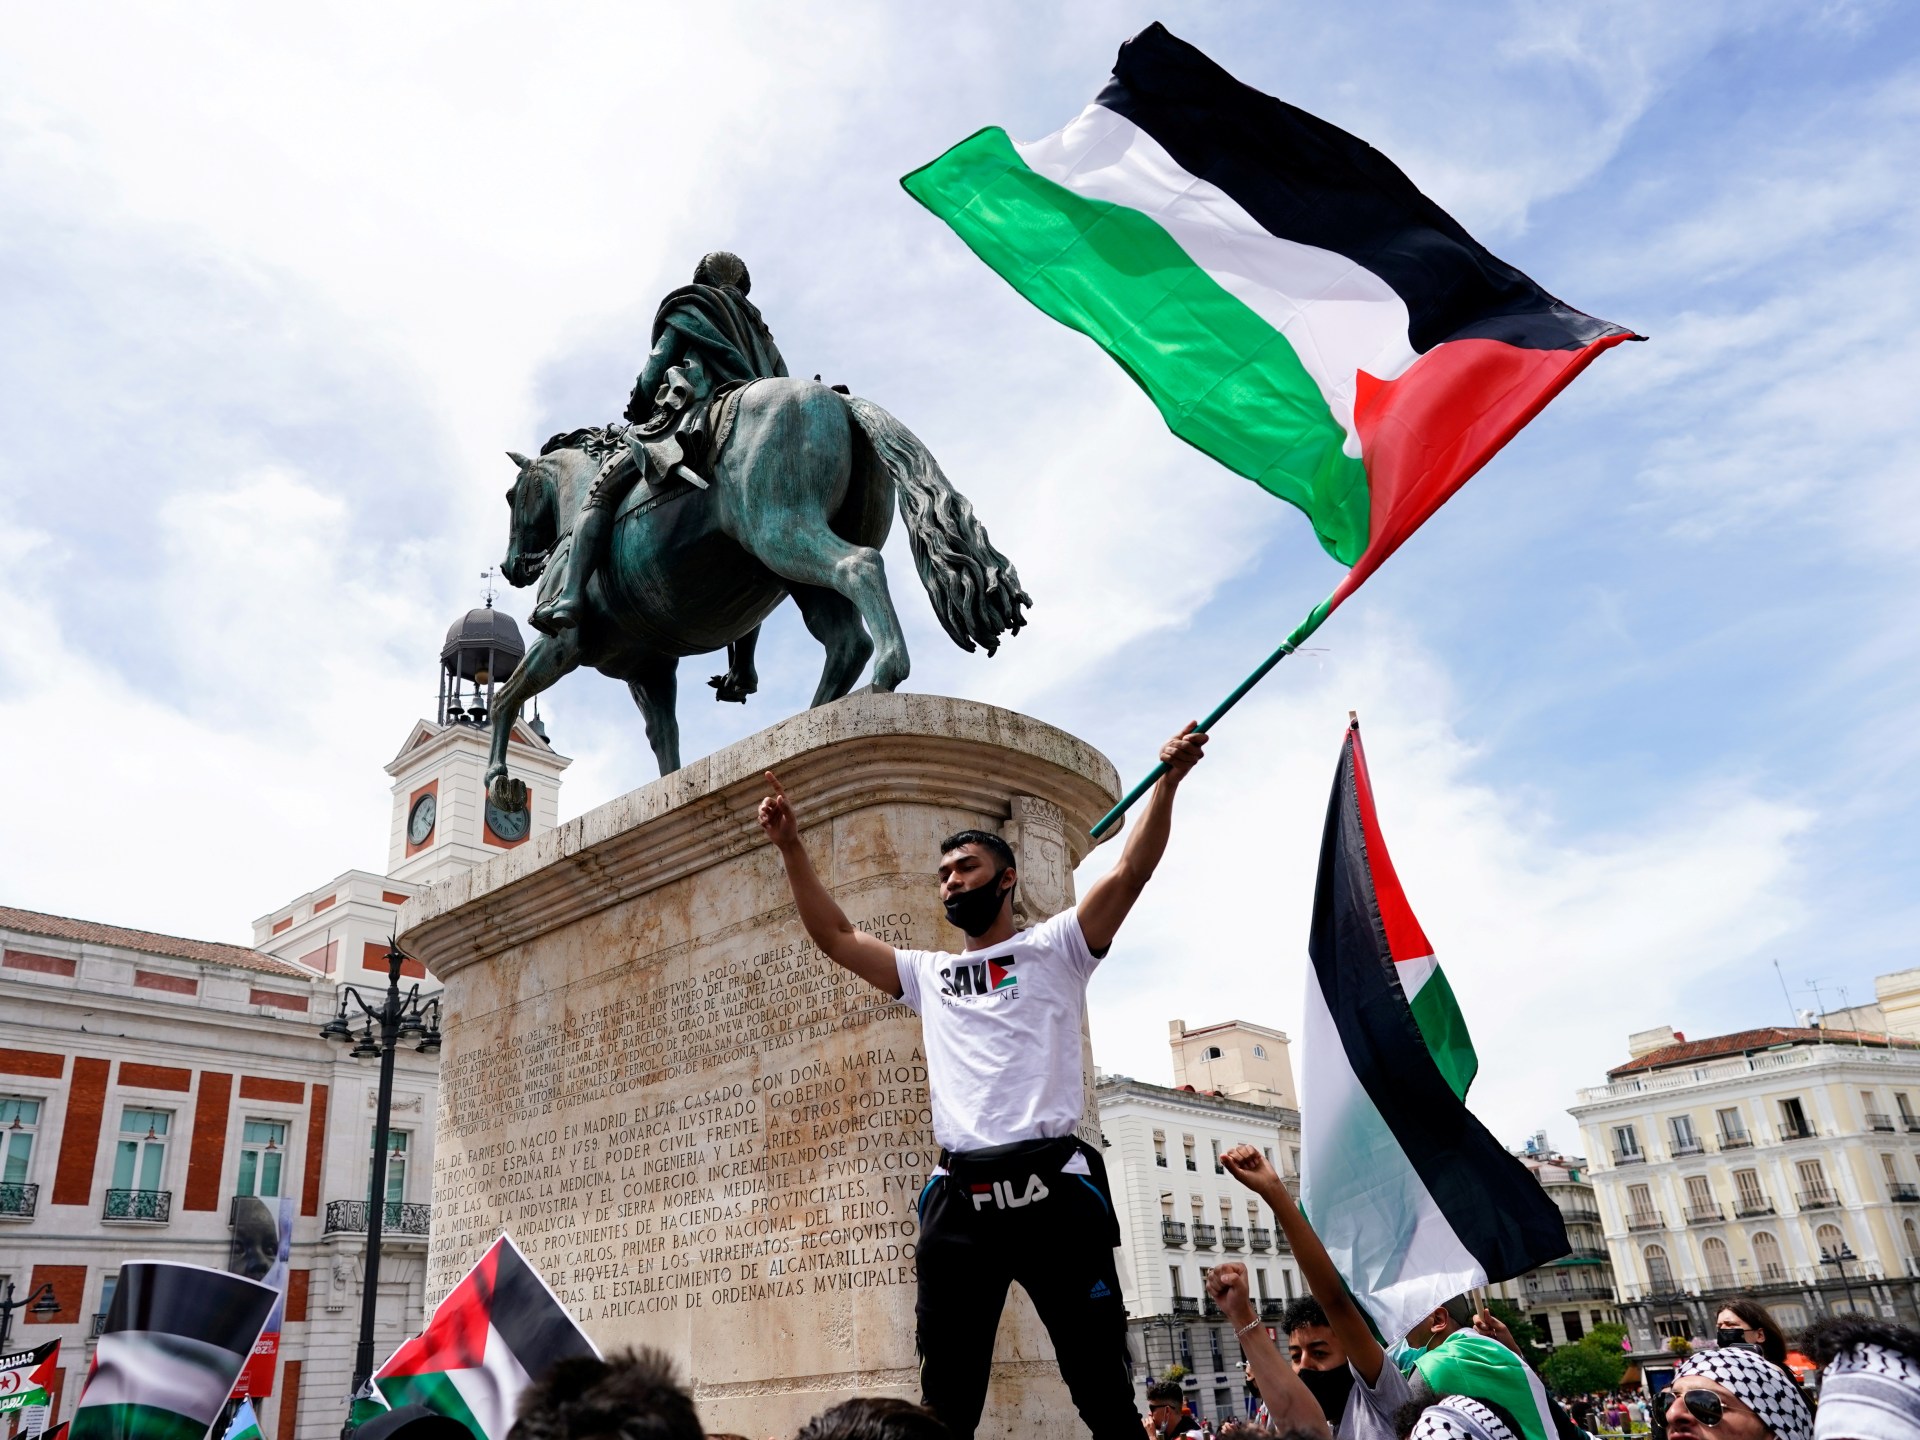 الإعلان عن مظاهرات في 88 مدينة إسبانية لوقف “الإبادة الجماعية” في غزة | أخبار – البوكس نيوز